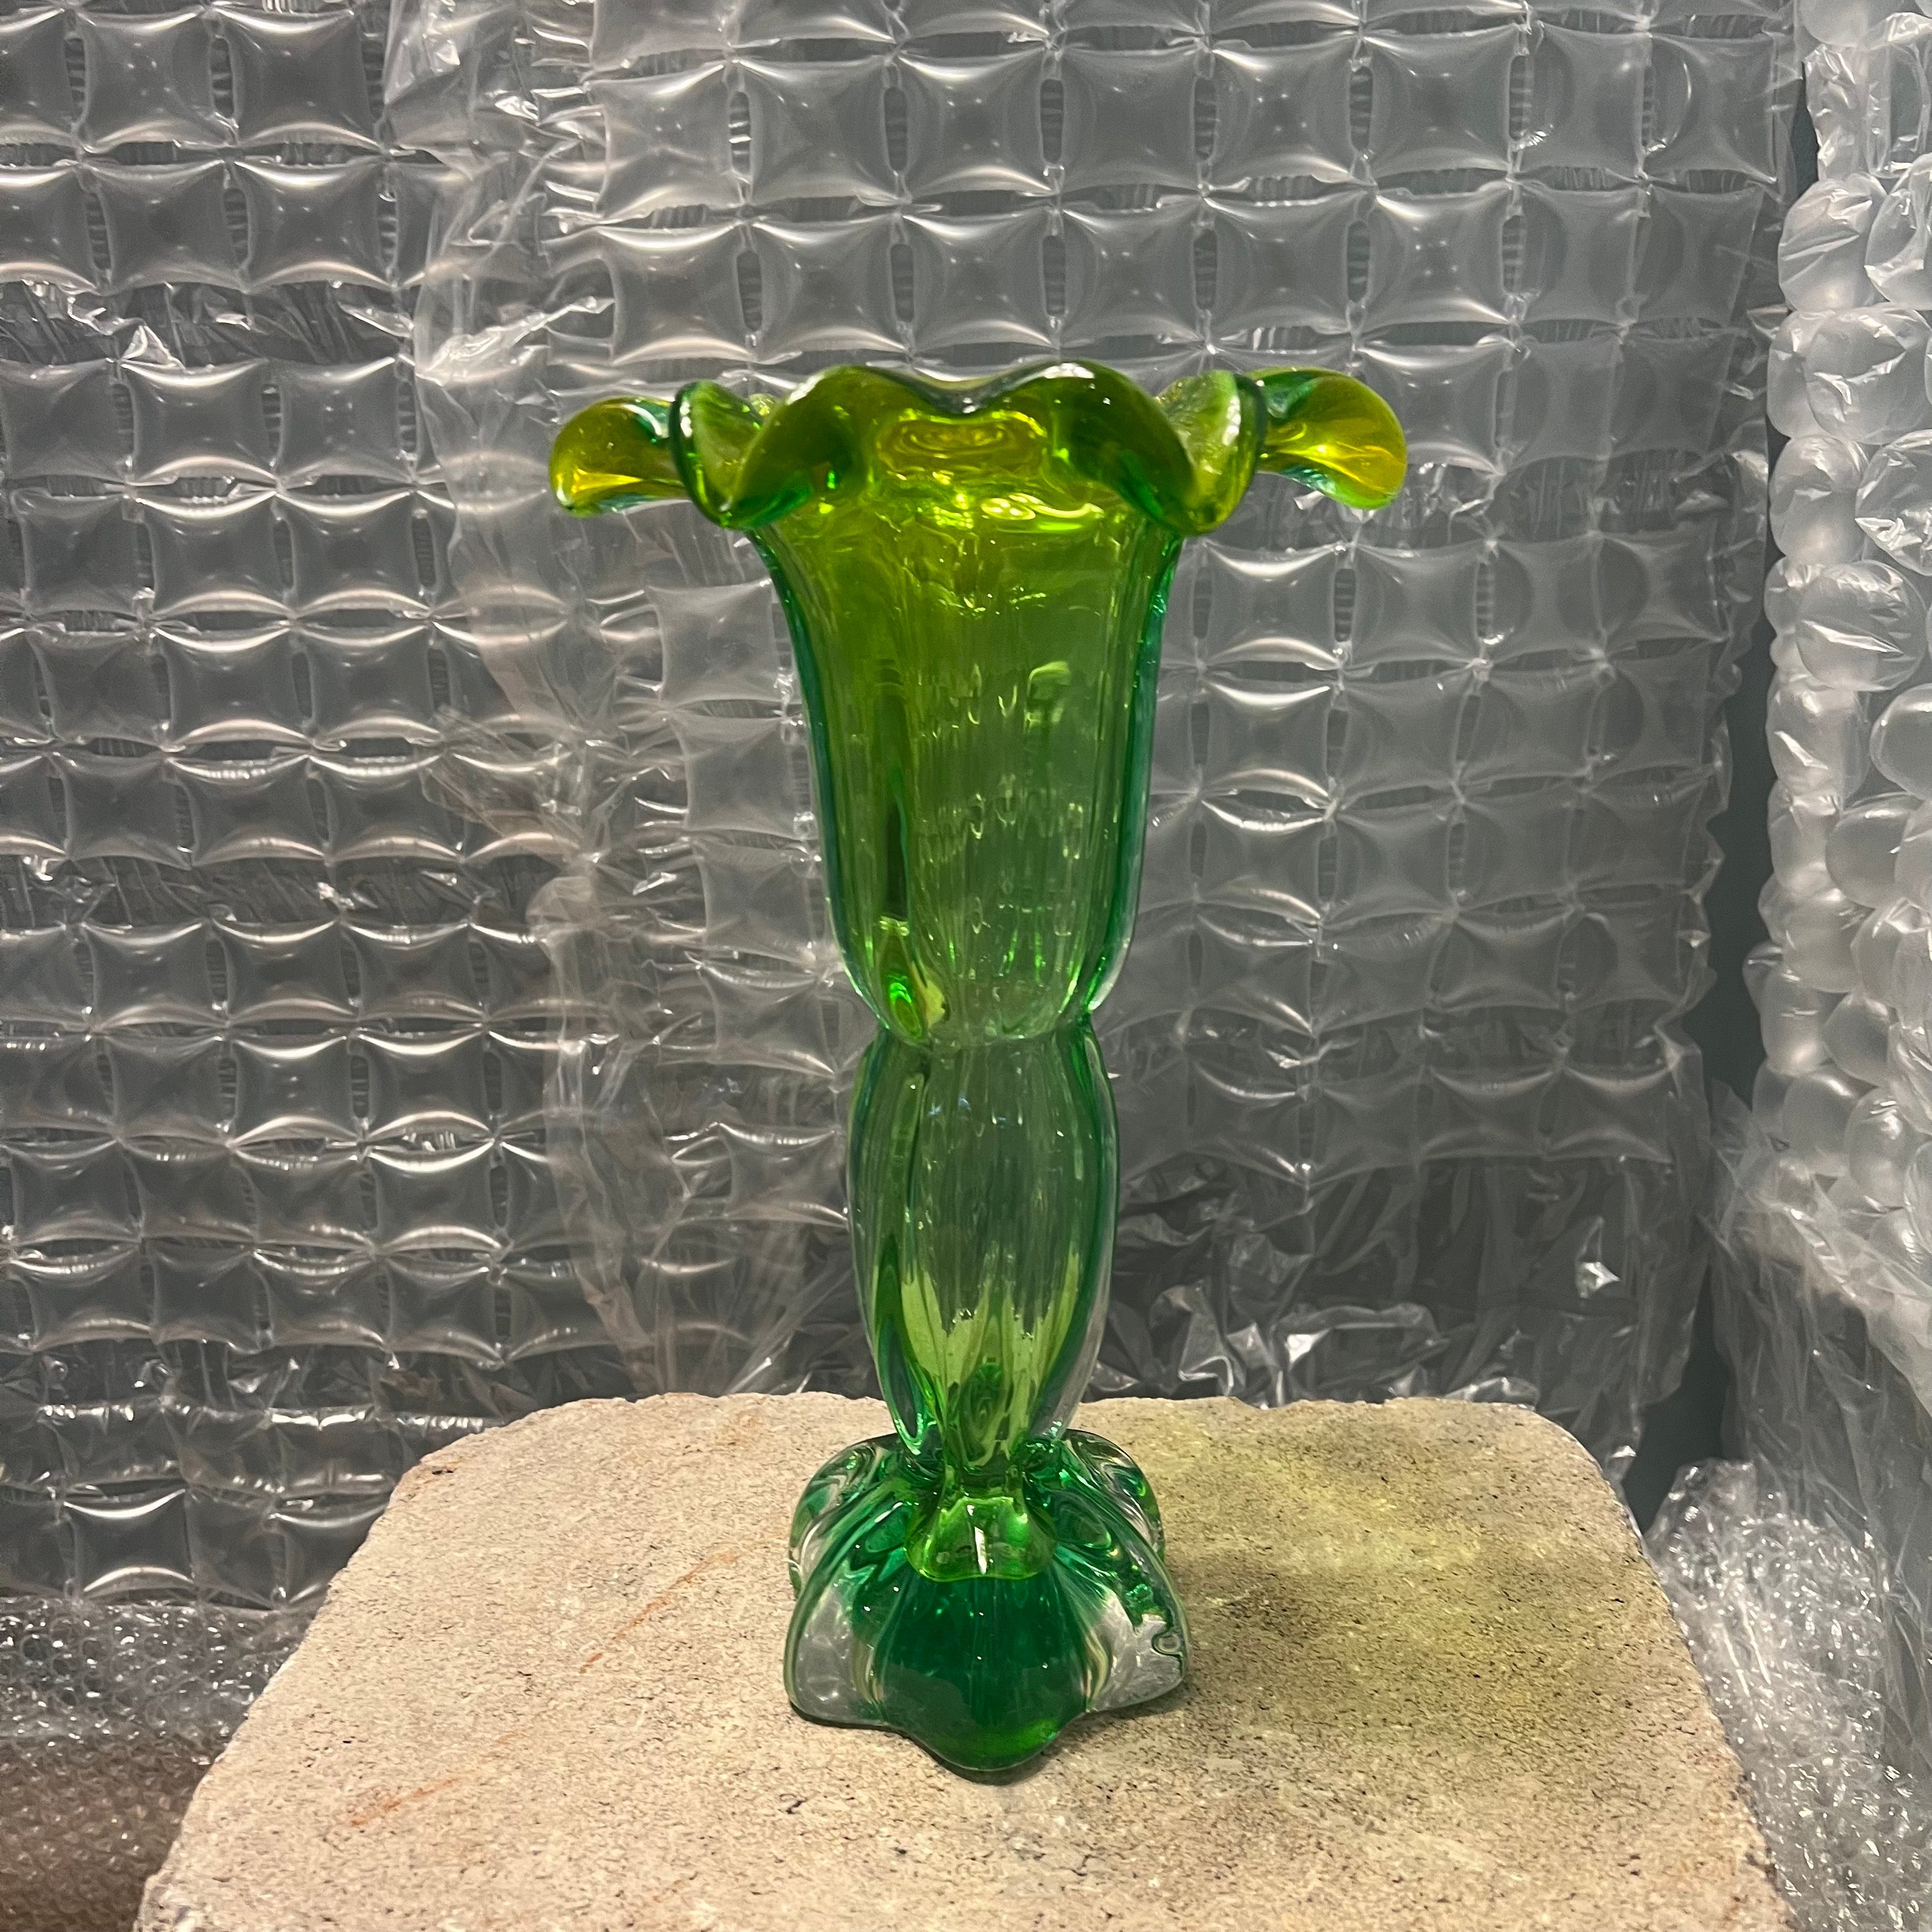 Murano Flower Vase